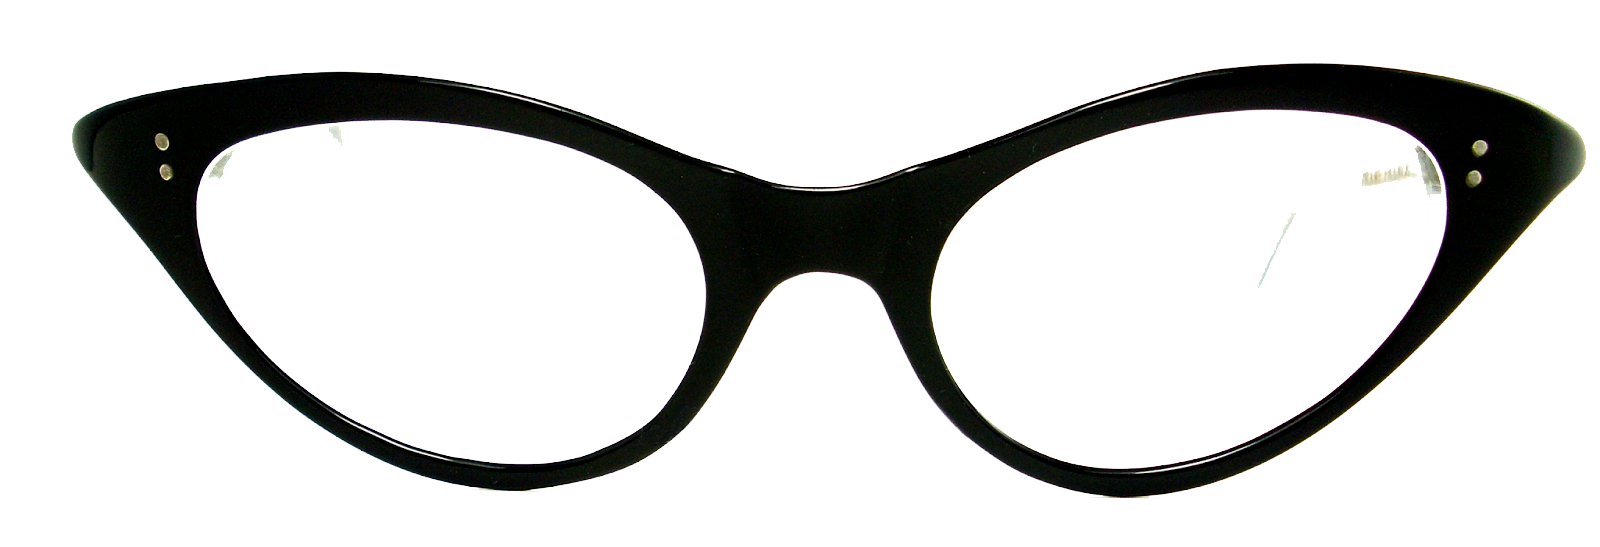 Sunglasses 1950S Cat Lens Images Frames Eye Clipart